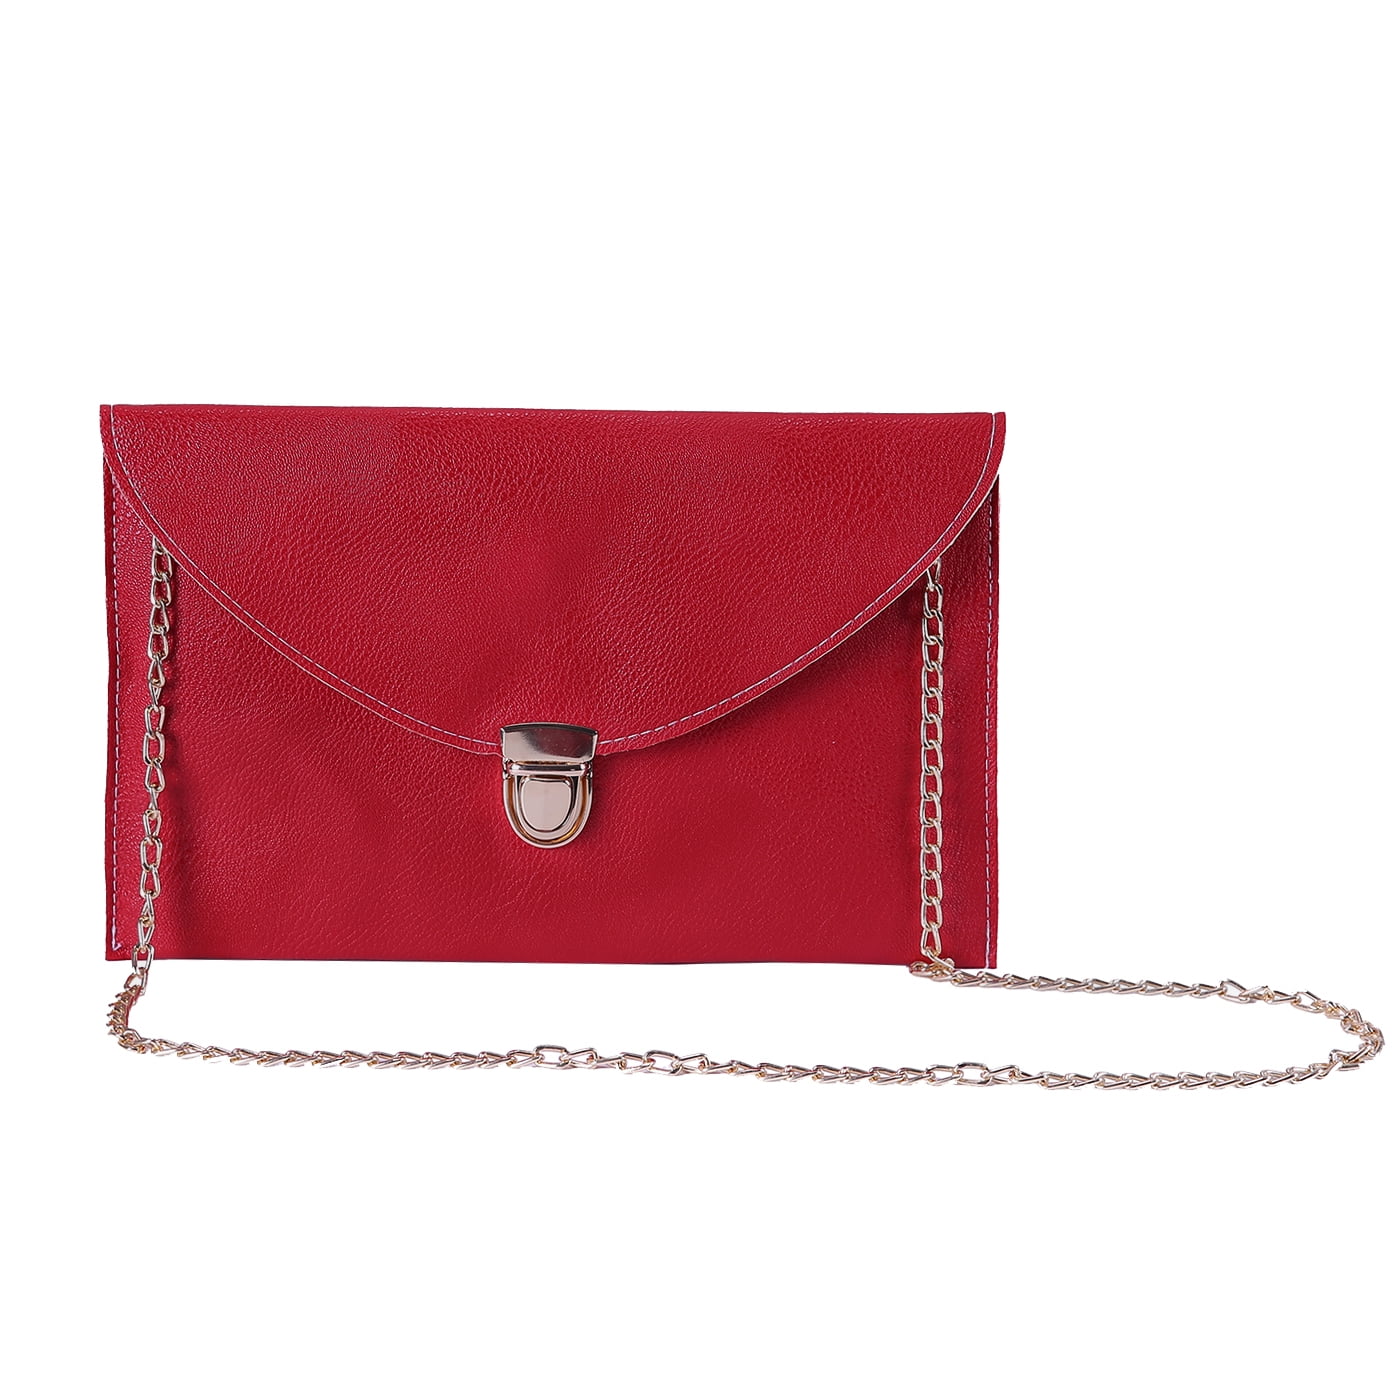 Goodbag Women Soft Leather Flap Envelope Shoulder Bag Solid Color Small Crossbody Bag 